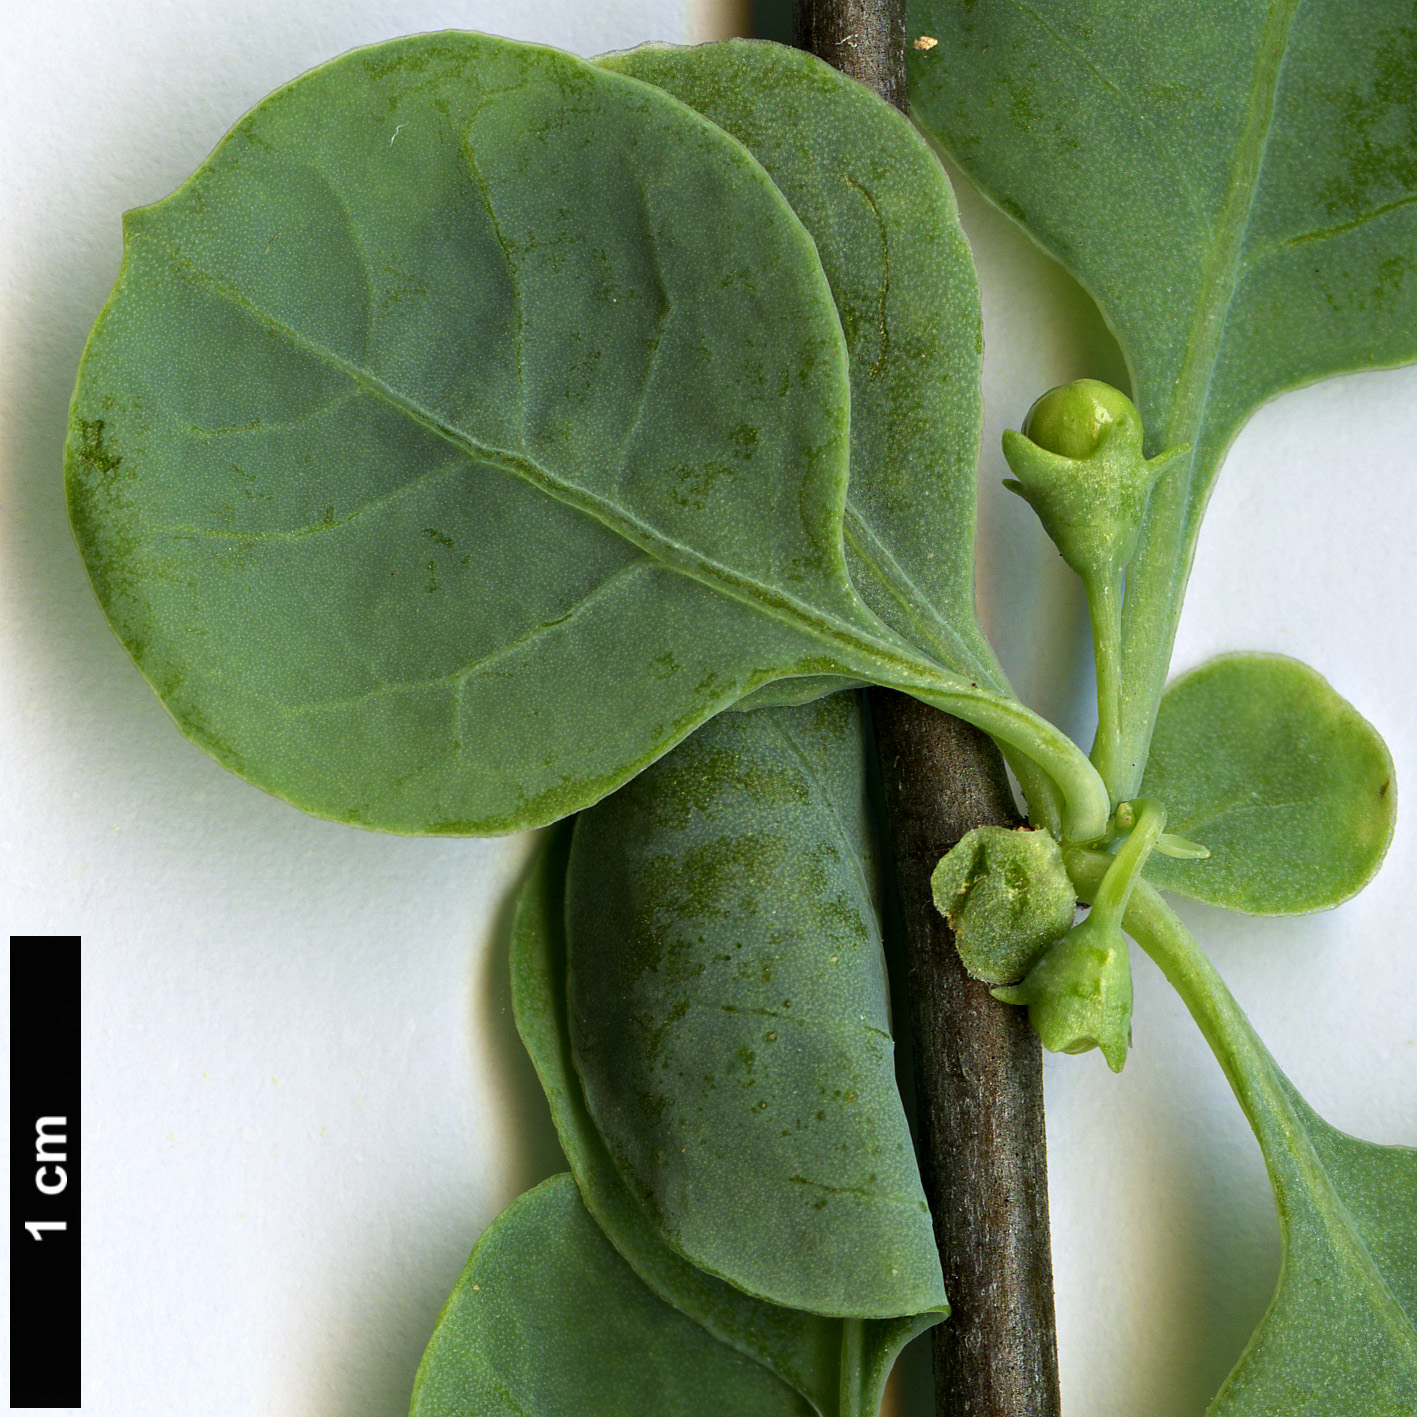 High resolution image: Family: Solanaceae - Genus: Lycium - Taxon: boerhaviifolium